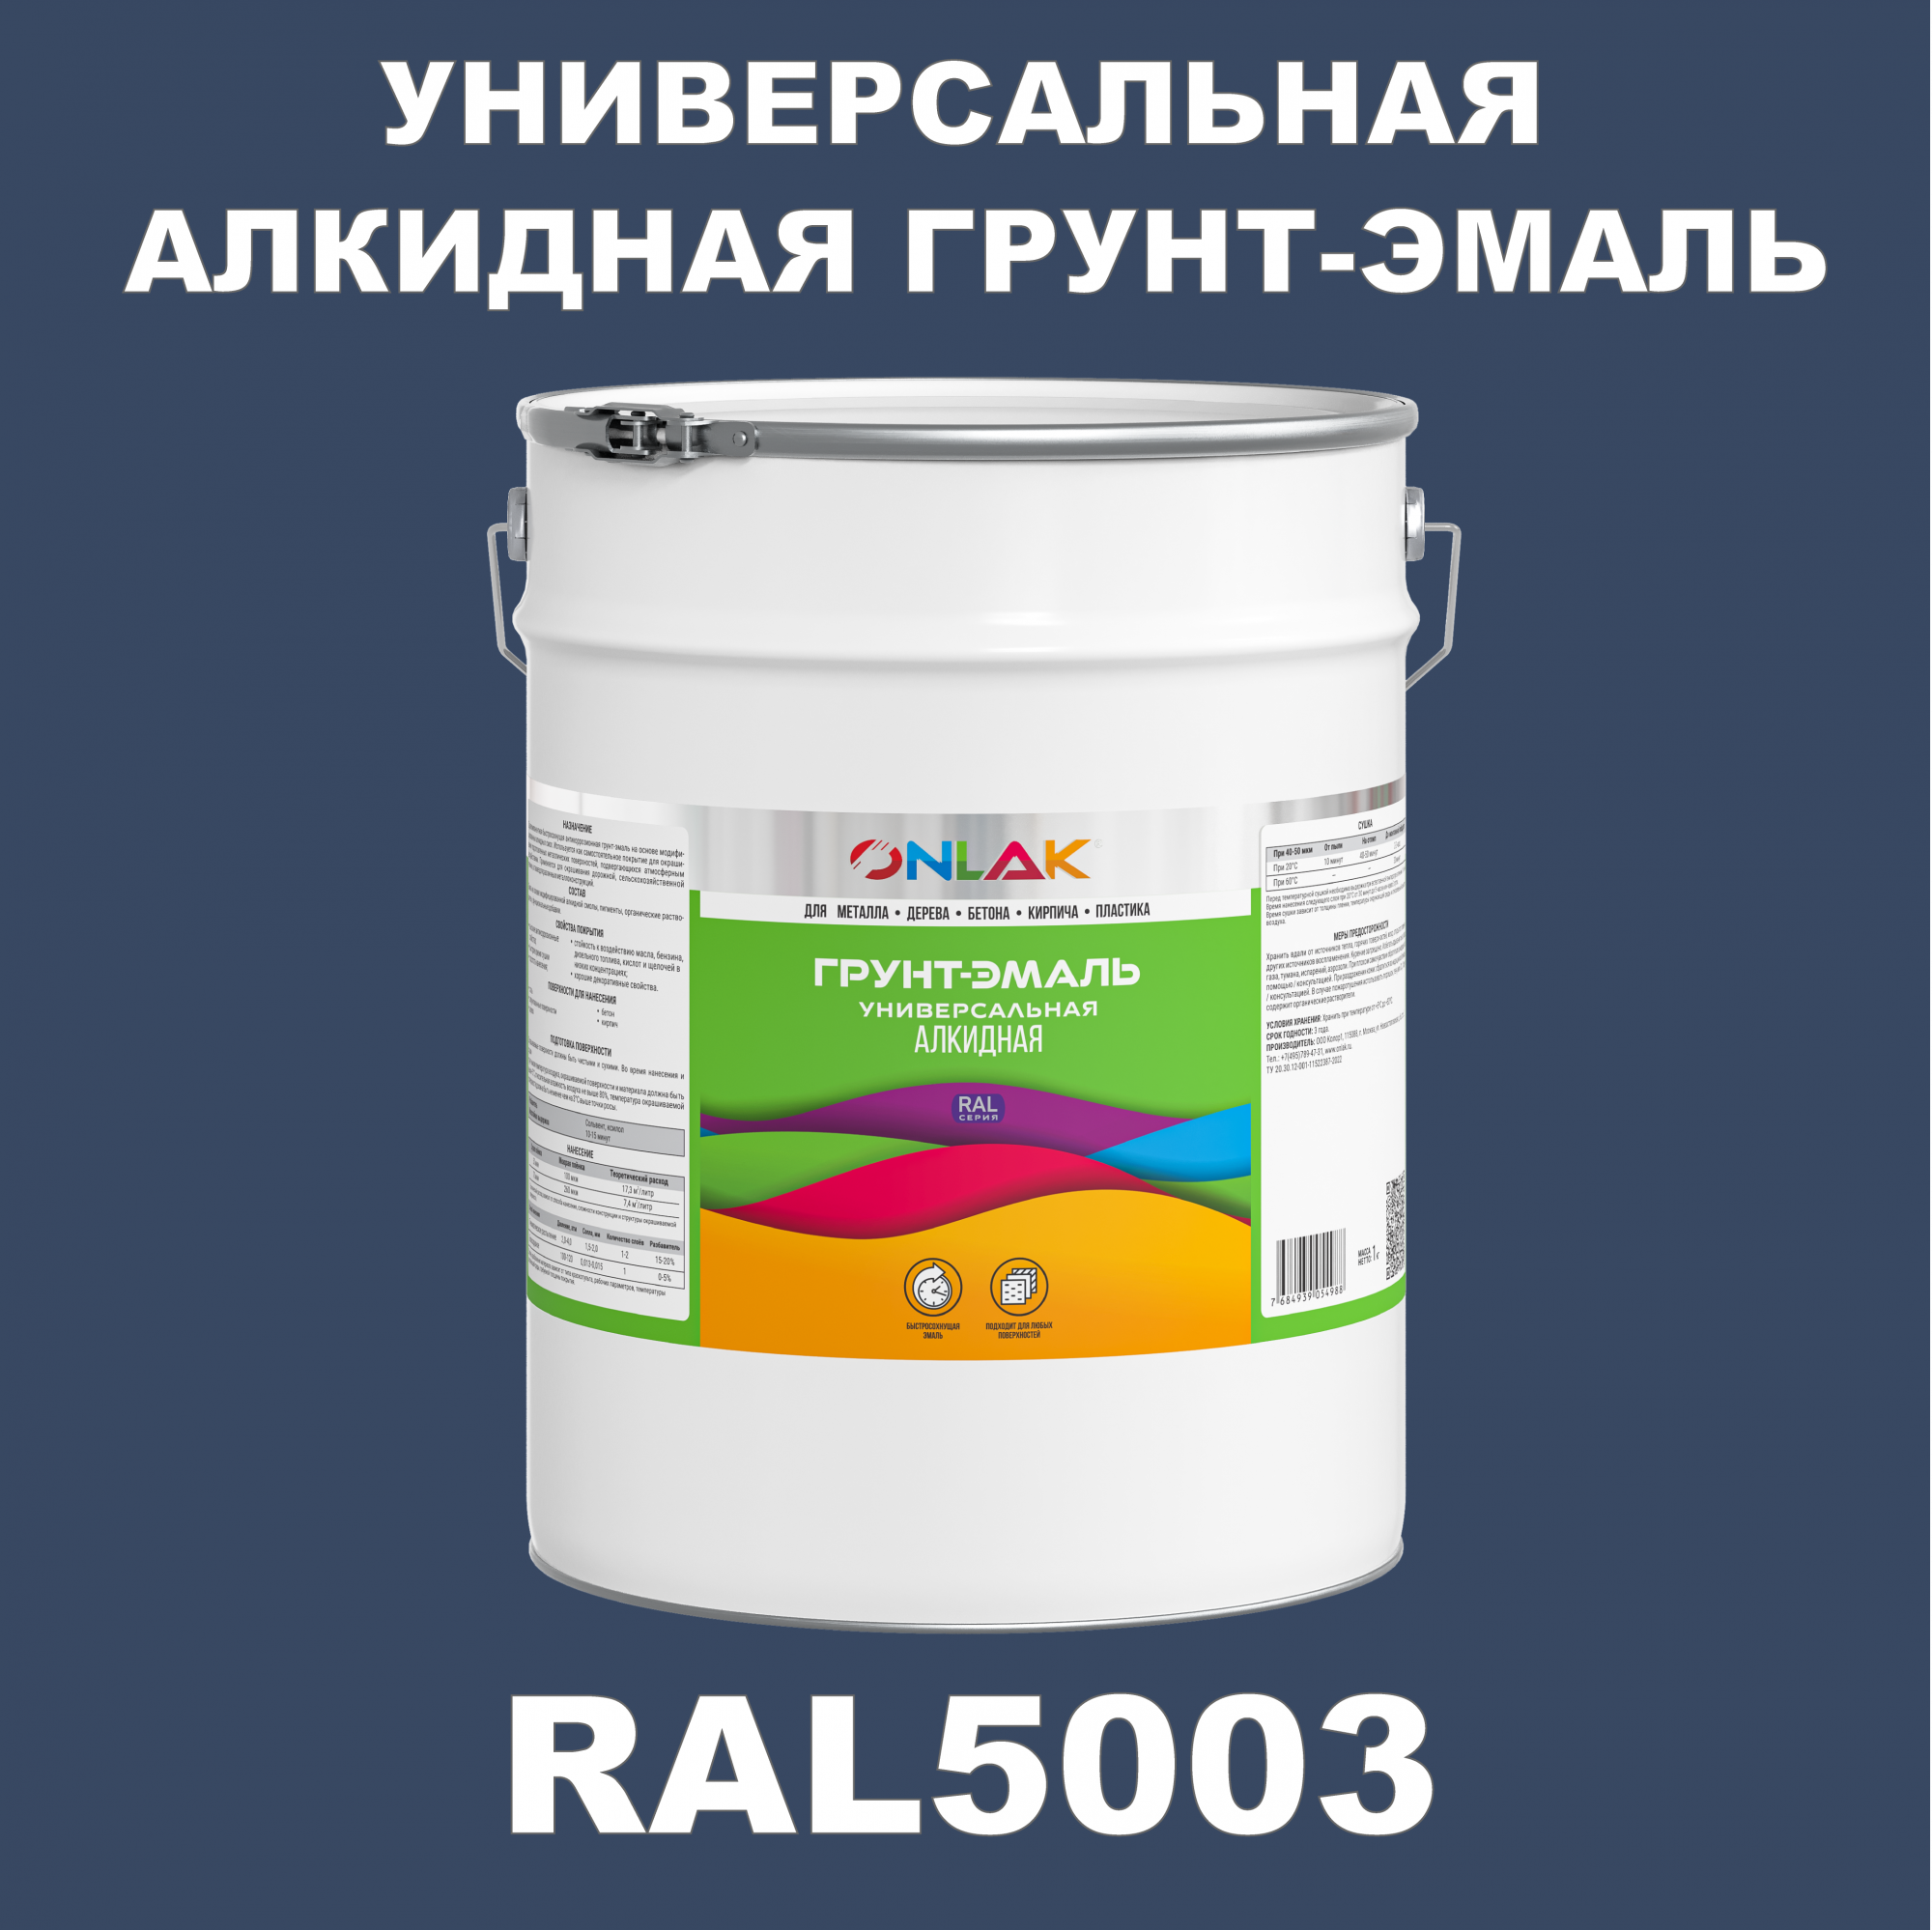 Грунт-эмаль ONLAK 1К RAL5003 антикоррозионная алкидная по металлу по ржавчине 20 кг грунт эмаль престиж по ржавчине алкидная зеленая 1 9 кг